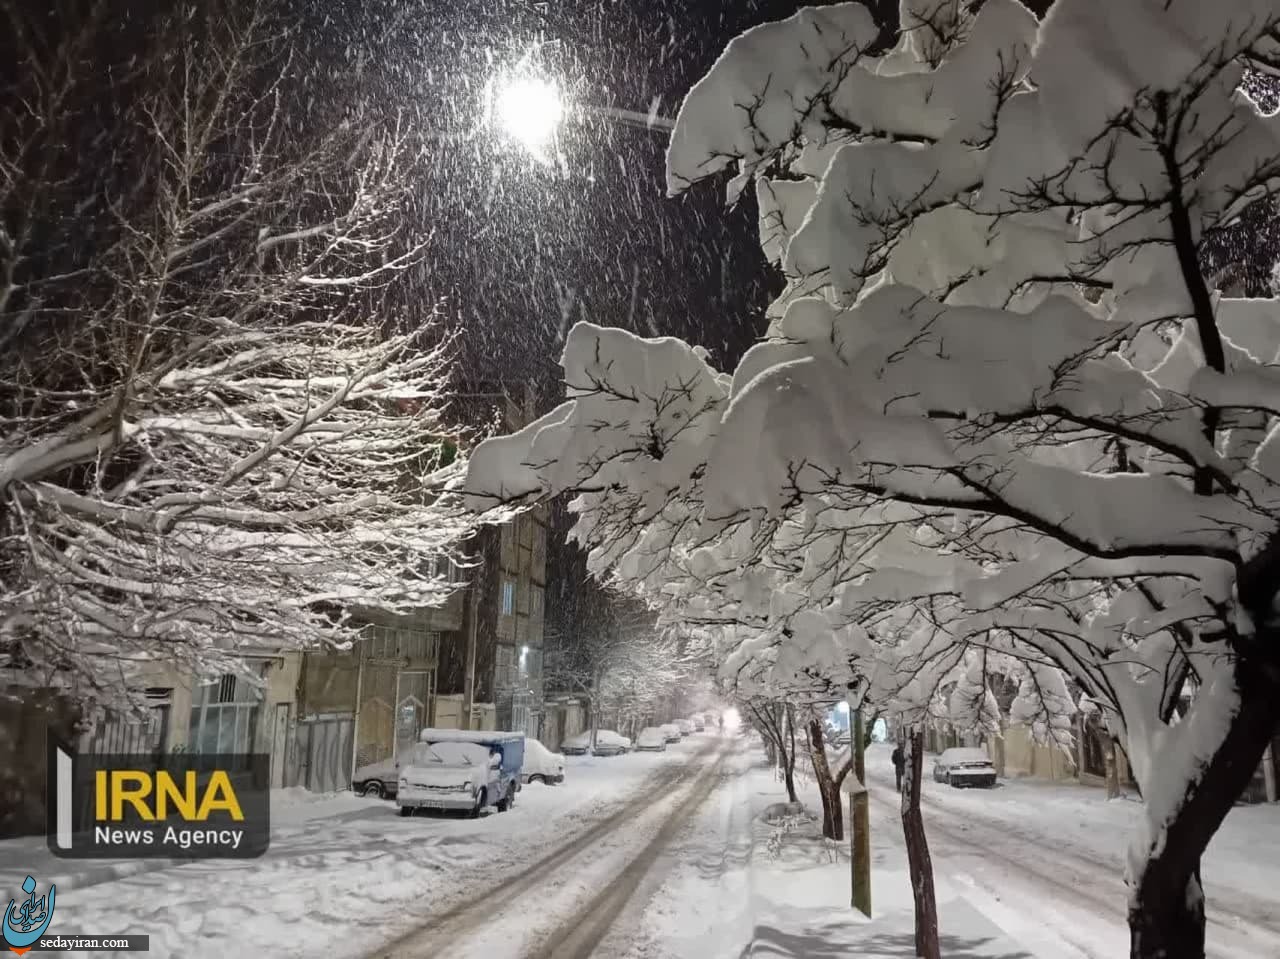 ارتفاع برف در اردبیل و مشگین شهر از ۳۰ سانتیمتر گذشت / تصاویر